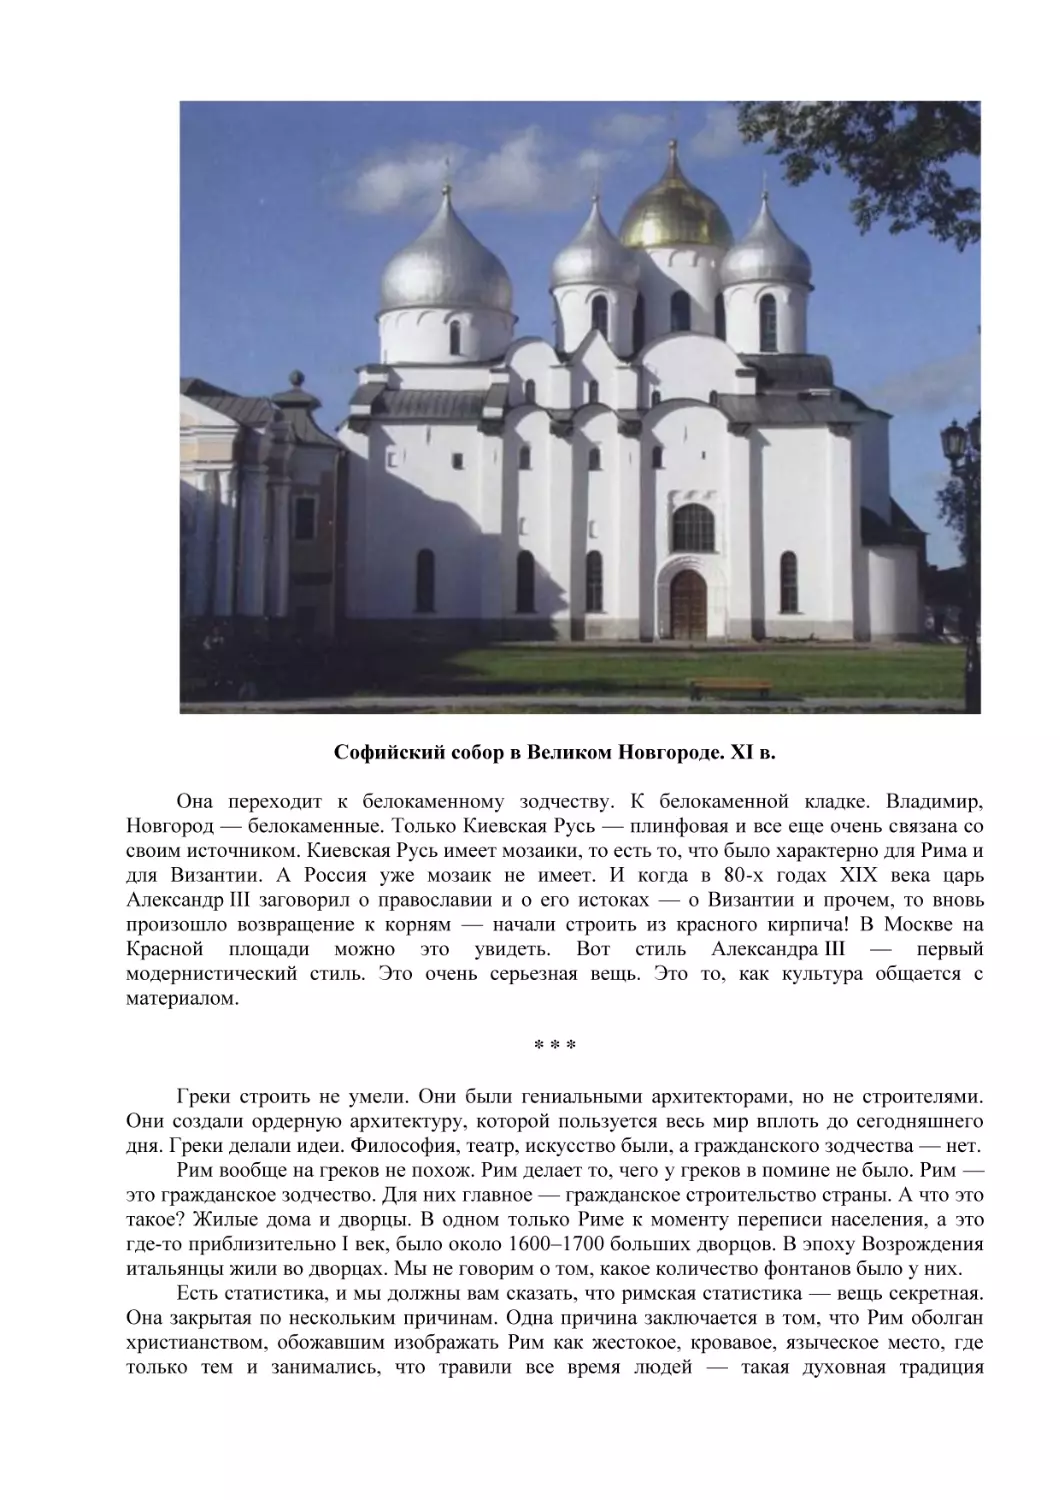 Софийский собор в Великом Новгороде. XI в.
* * * (3)